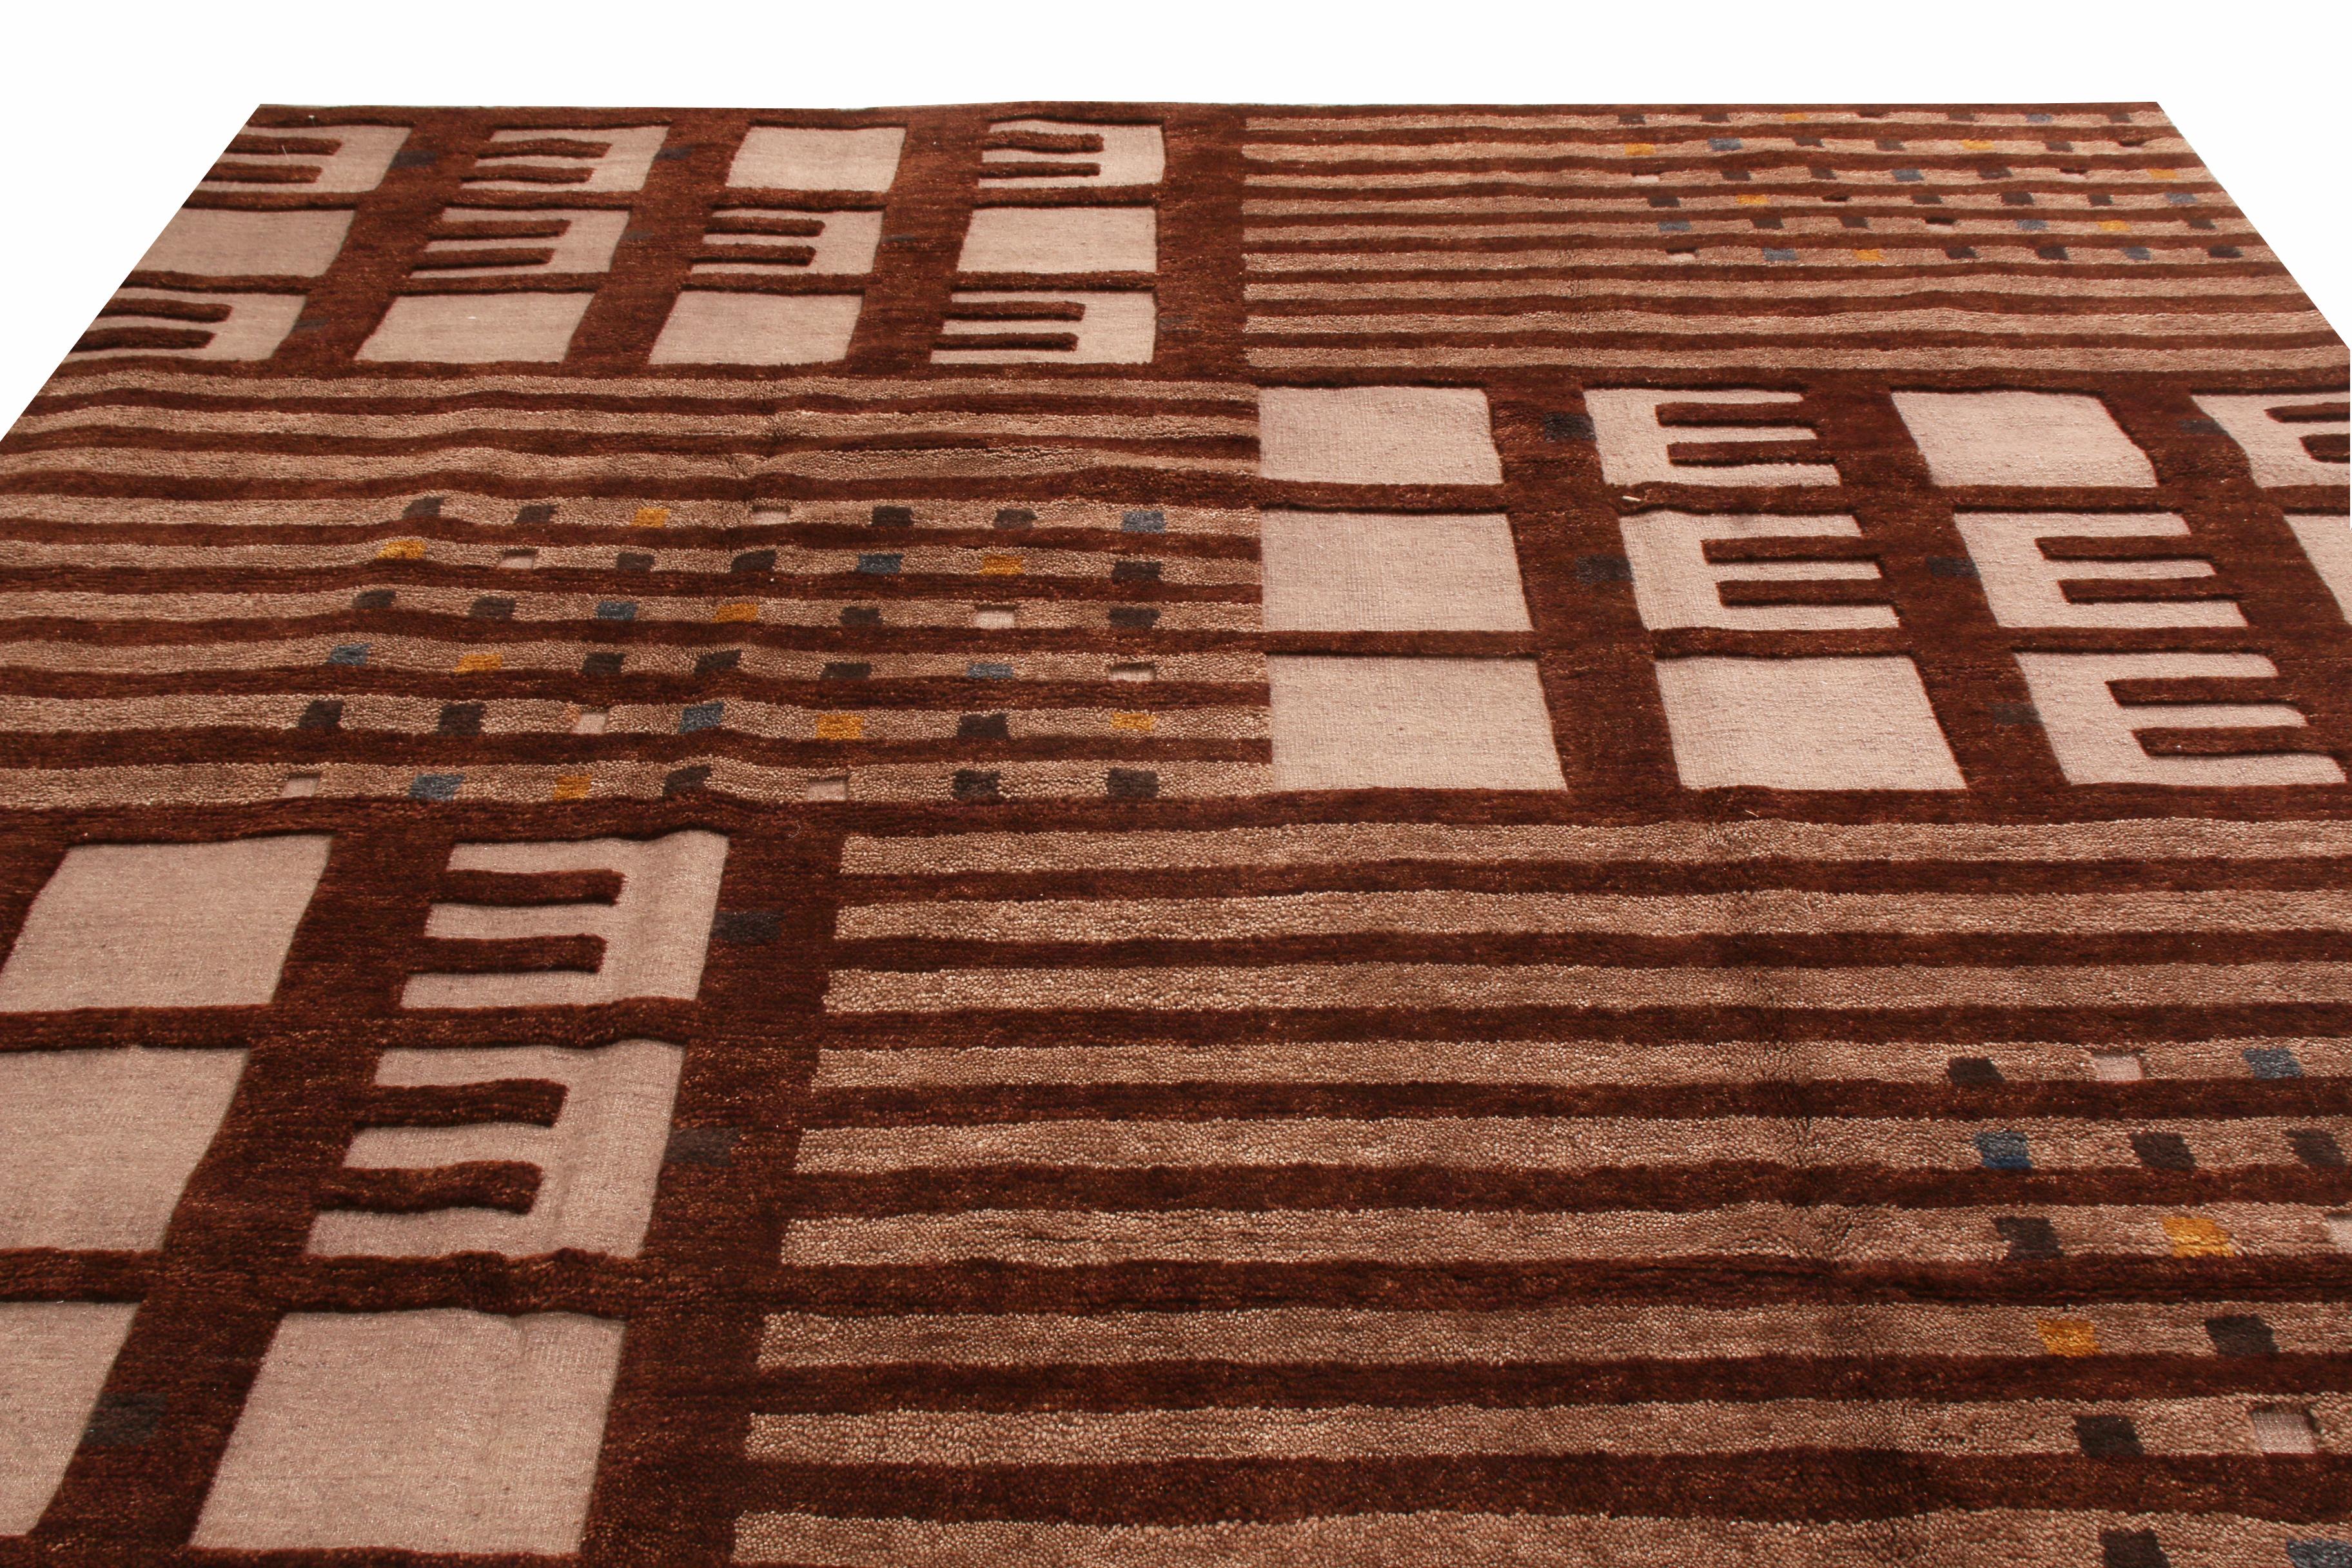 Dieser aus Indien stammende geometrische Teppich ist aus hochwertigem, strukturiertem Wollflor handgeknüpft und weist ein ausgeprägtes asymmetrisches geometrisches Muster auf. Das Feldmuster verwendet sowohl volle und fein gewebte horizontale